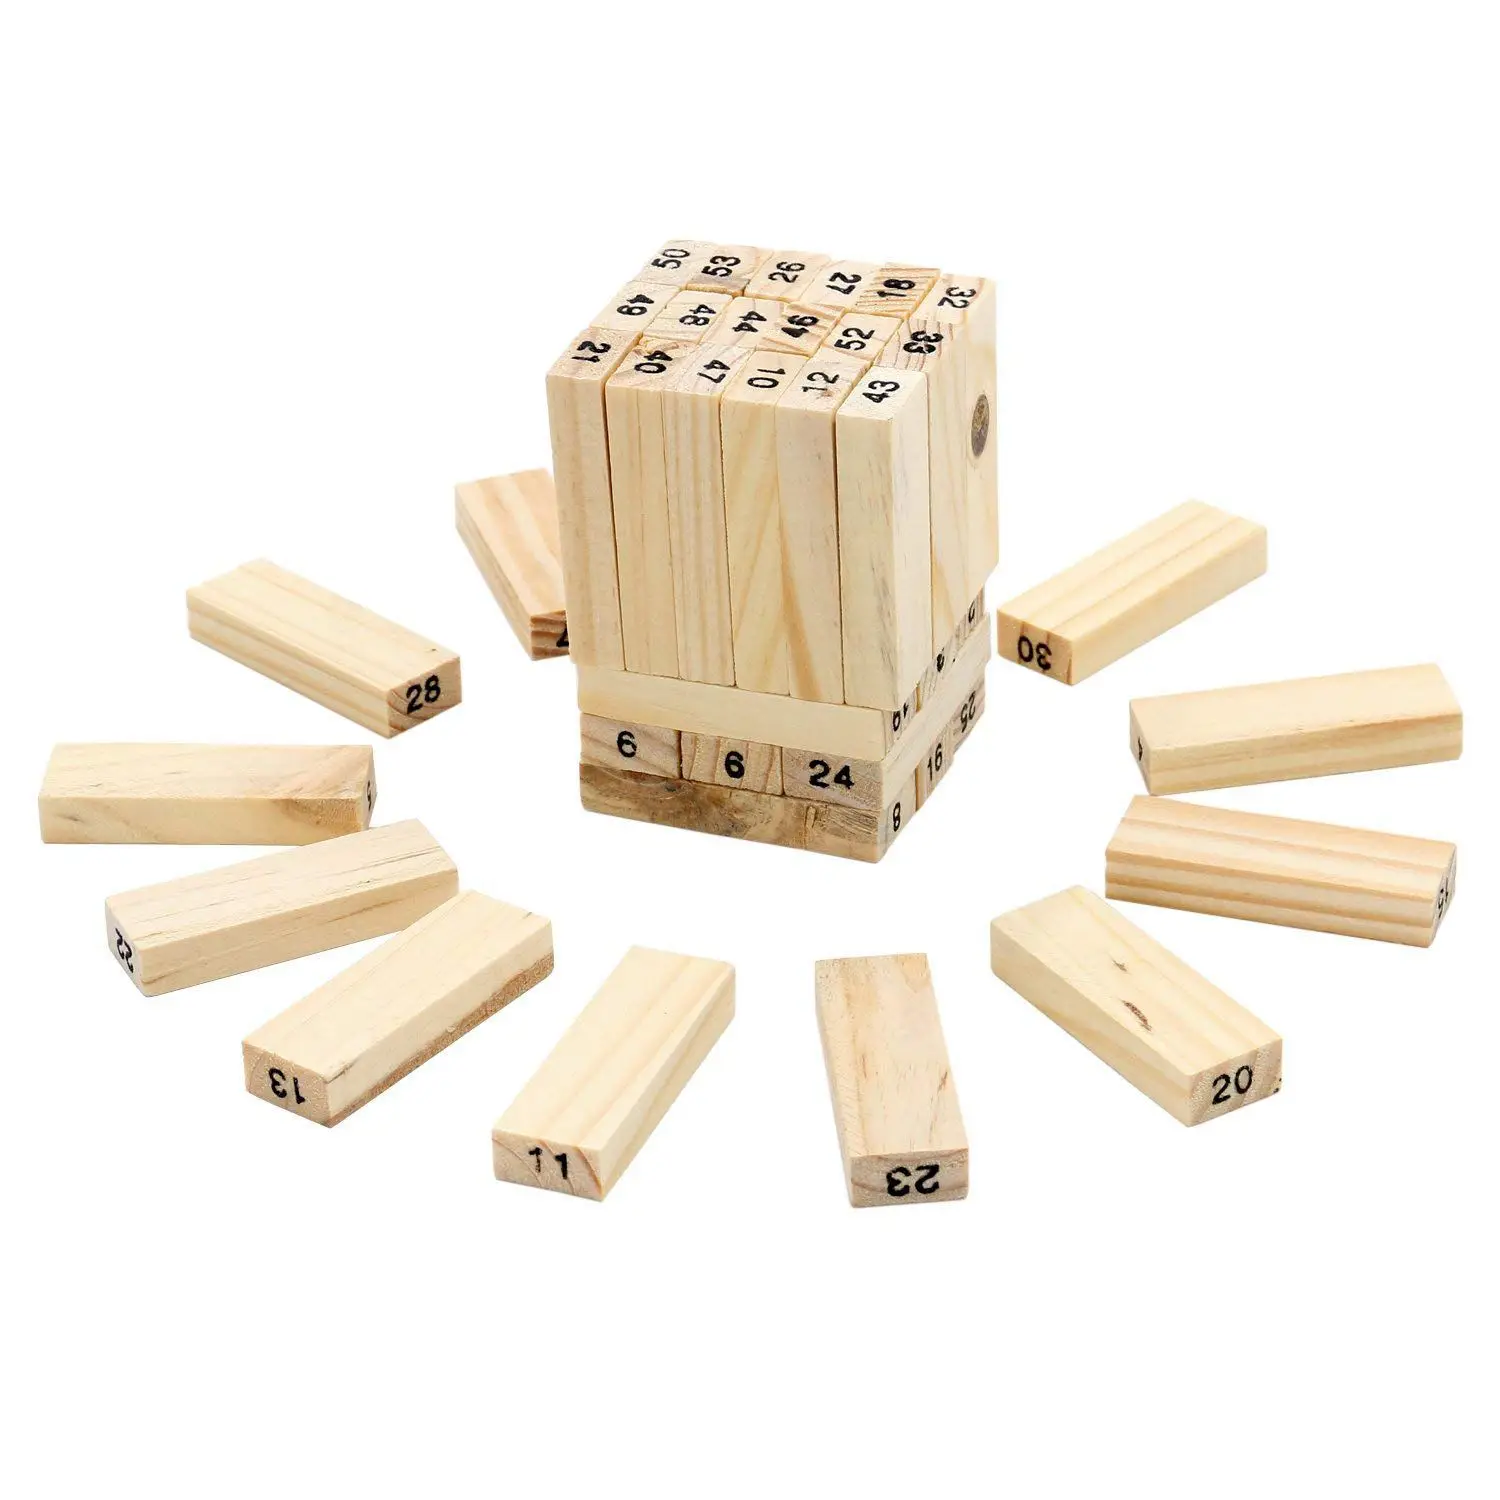 54 шт. деревянный блок игра в штабелирование с цифрами и кубиками